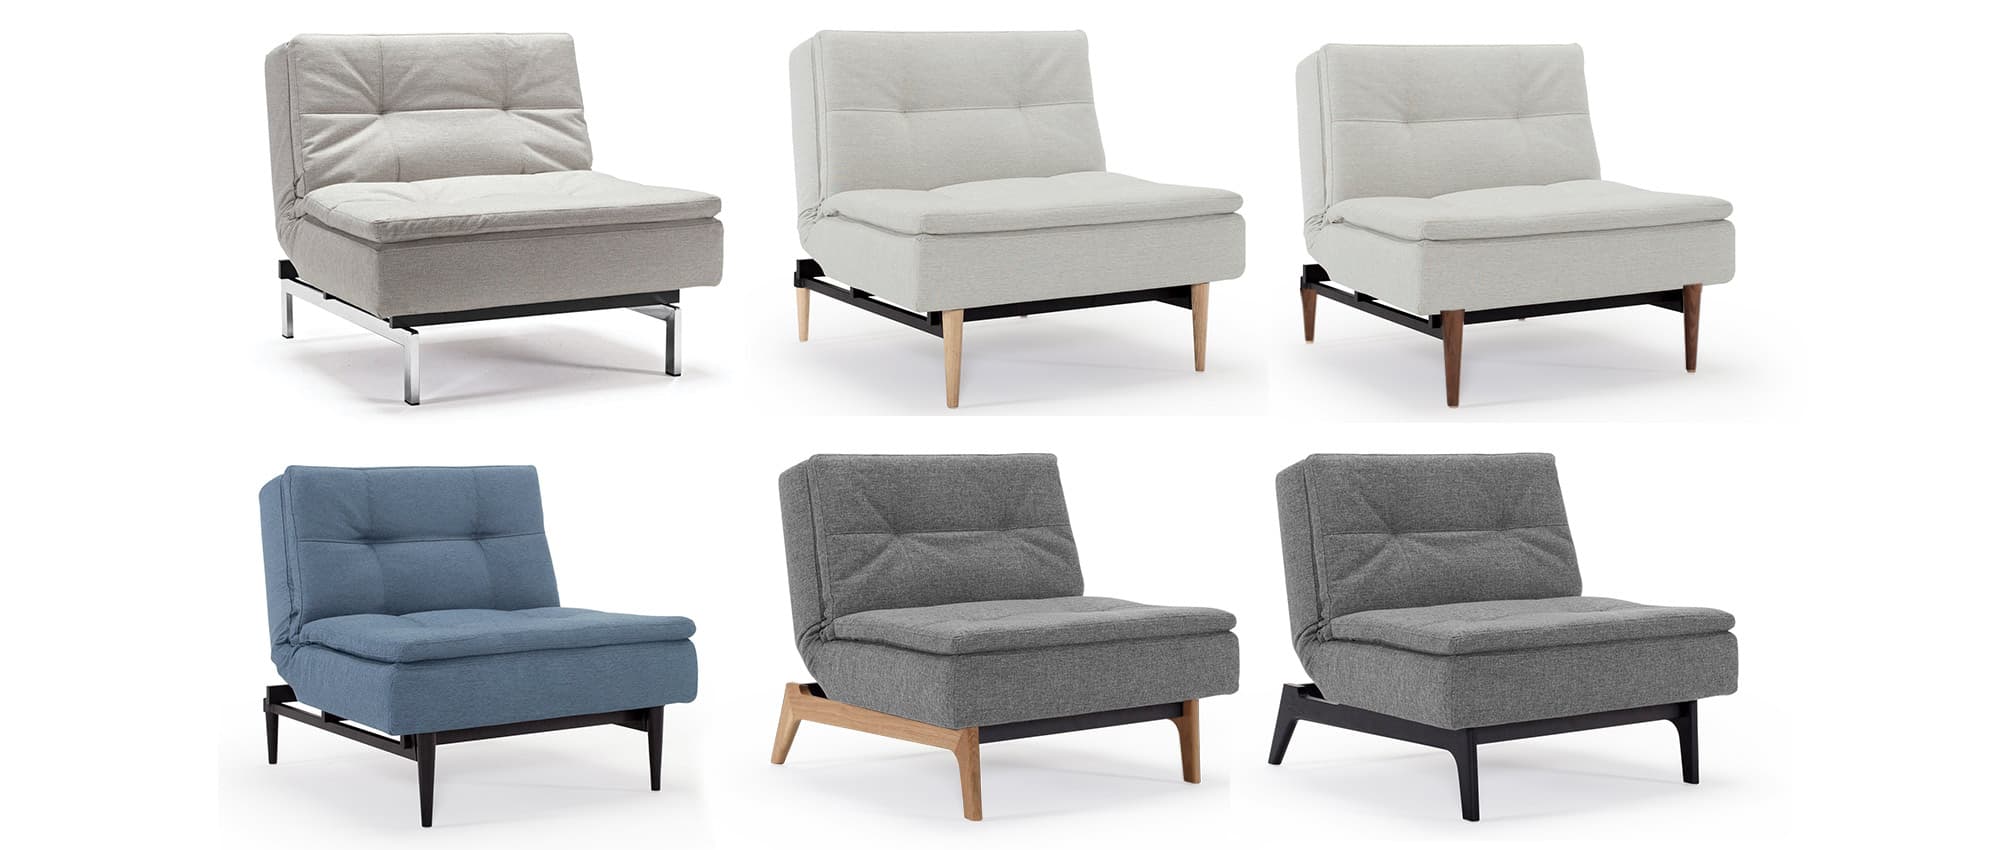 DUBLEXO Sessel von Innovation mit hellen, dunkelbraunen oder schwarzen Holzfüßen oder schwarzen Metallfüßen oder Chromfüße